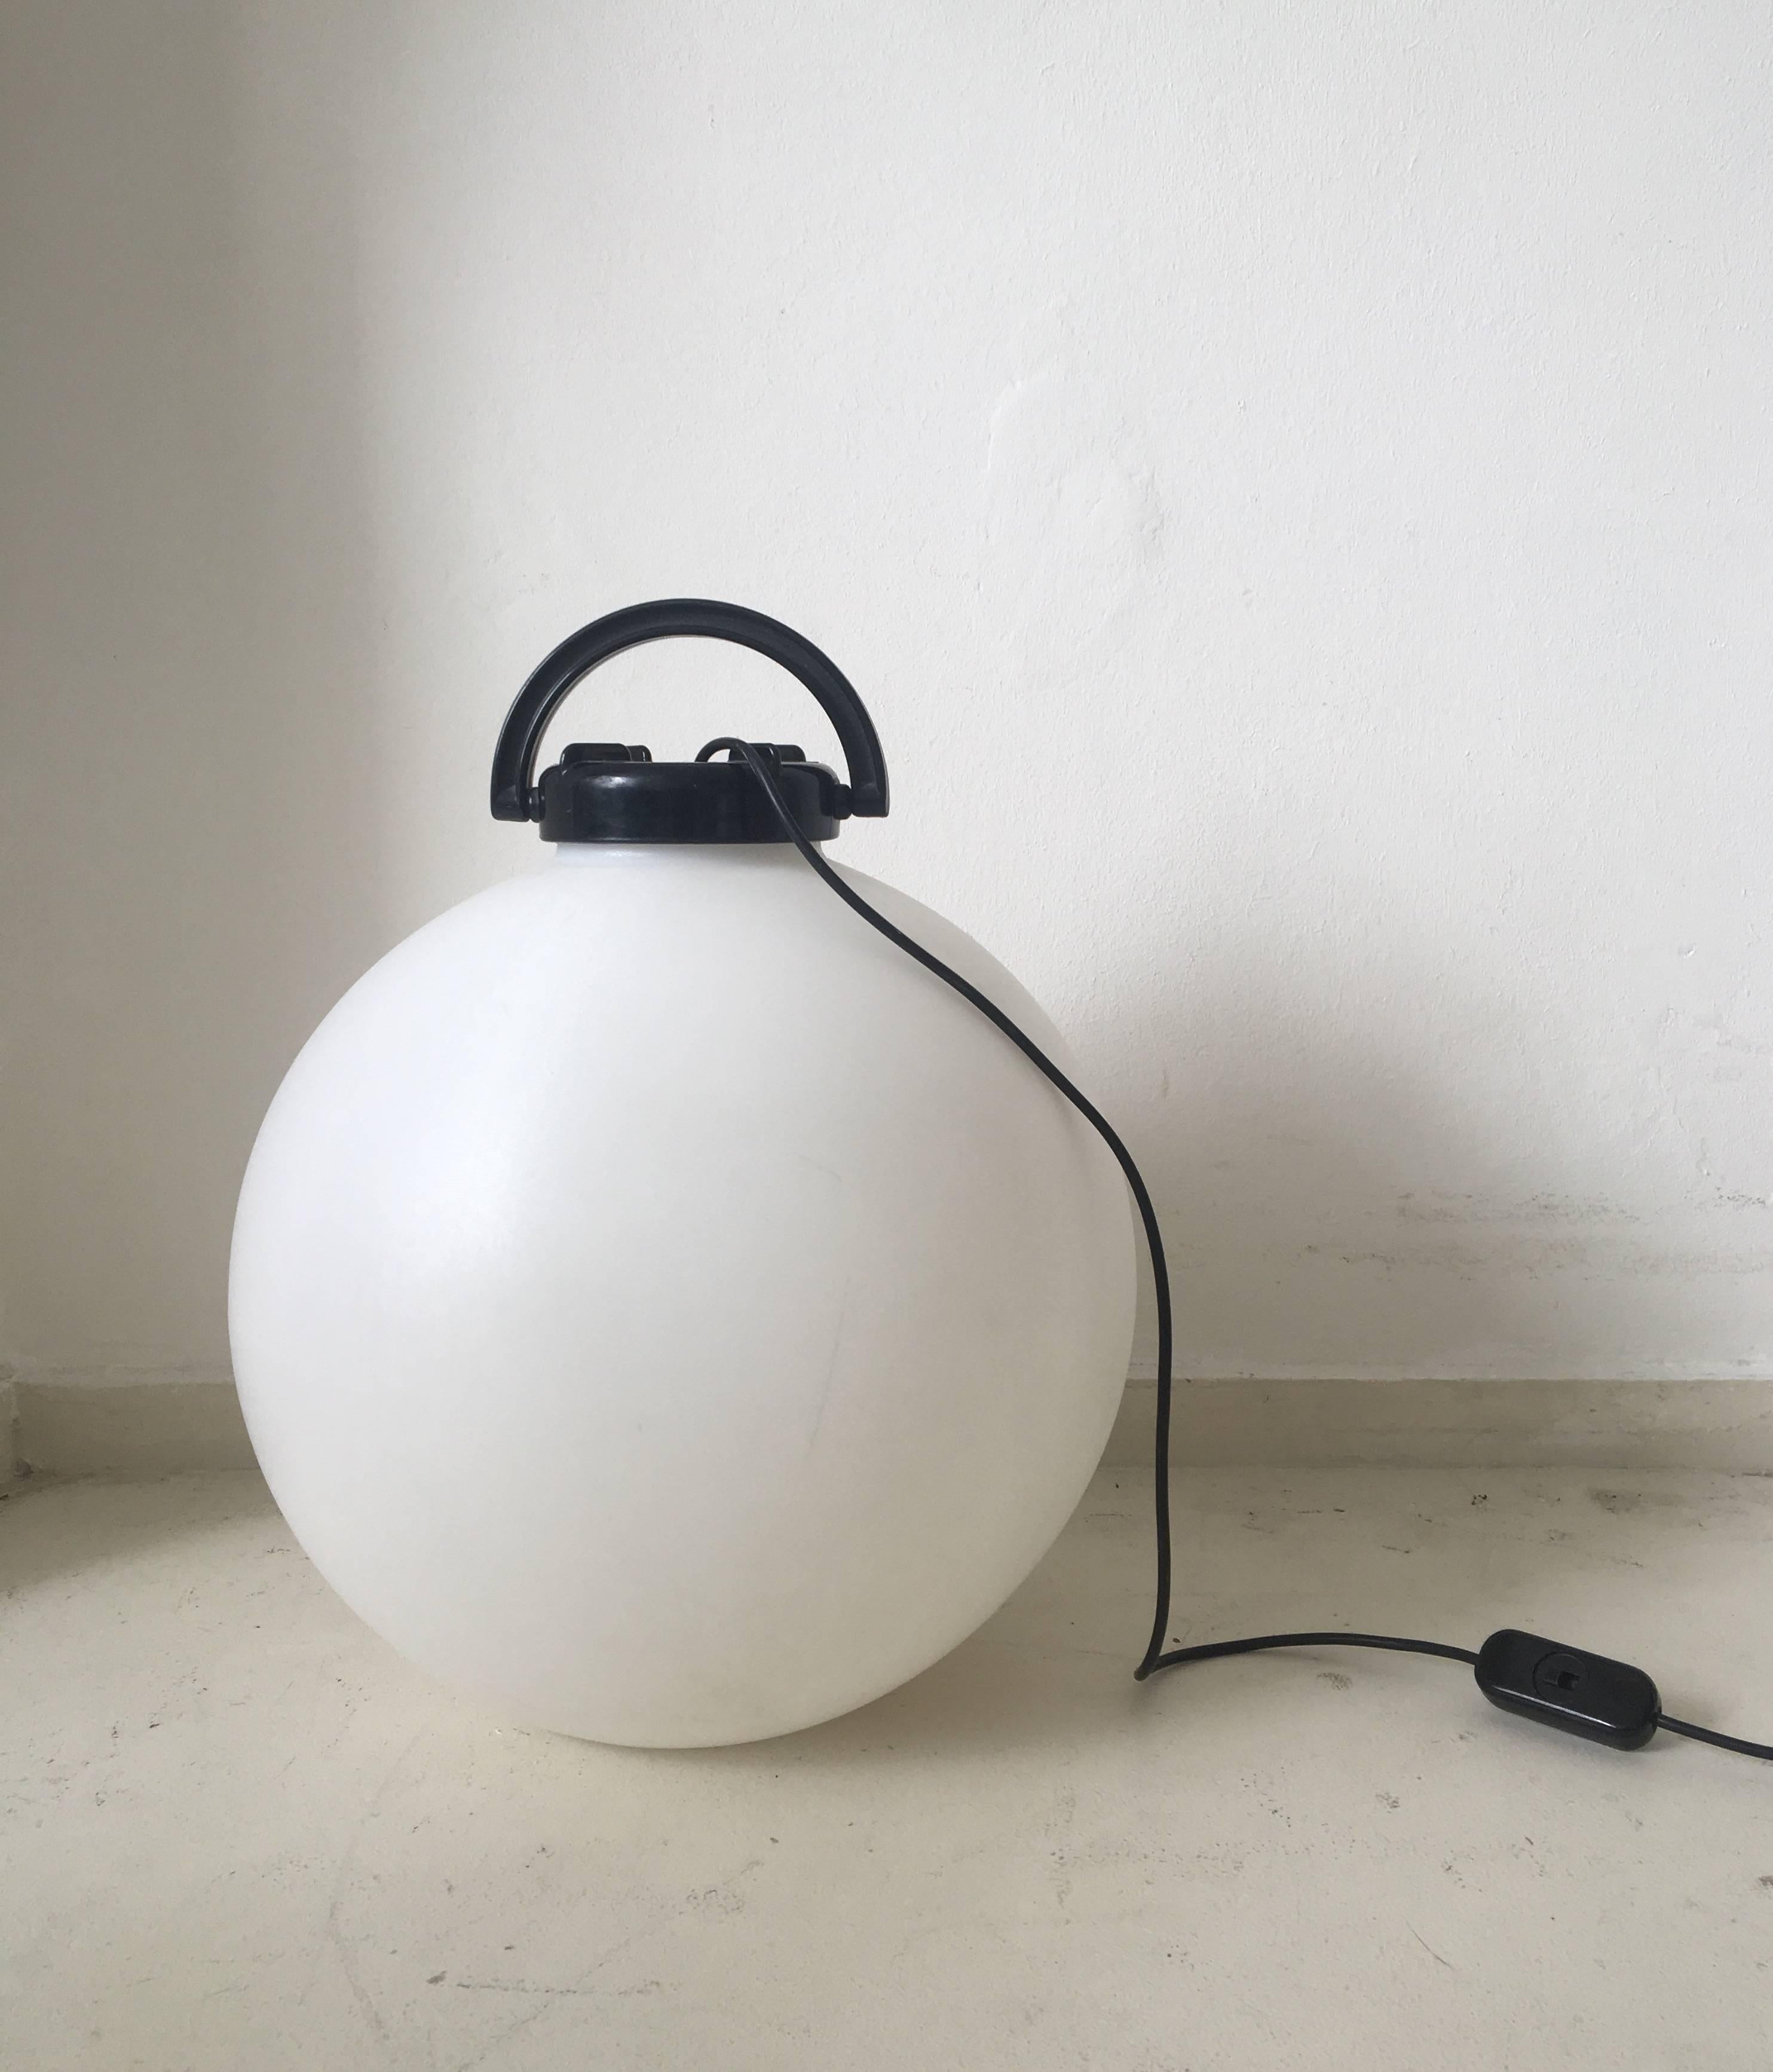 Superbe lampadaire portable conçu par Isao Hosoe pour Valenti Milano en 1975. Cette lampe comporte une boule en polyuréthane blanc avec une poignée en plastique ABS noir qui maintient la signature. Peut être utilisé à l'extérieur ou à l'intérieur